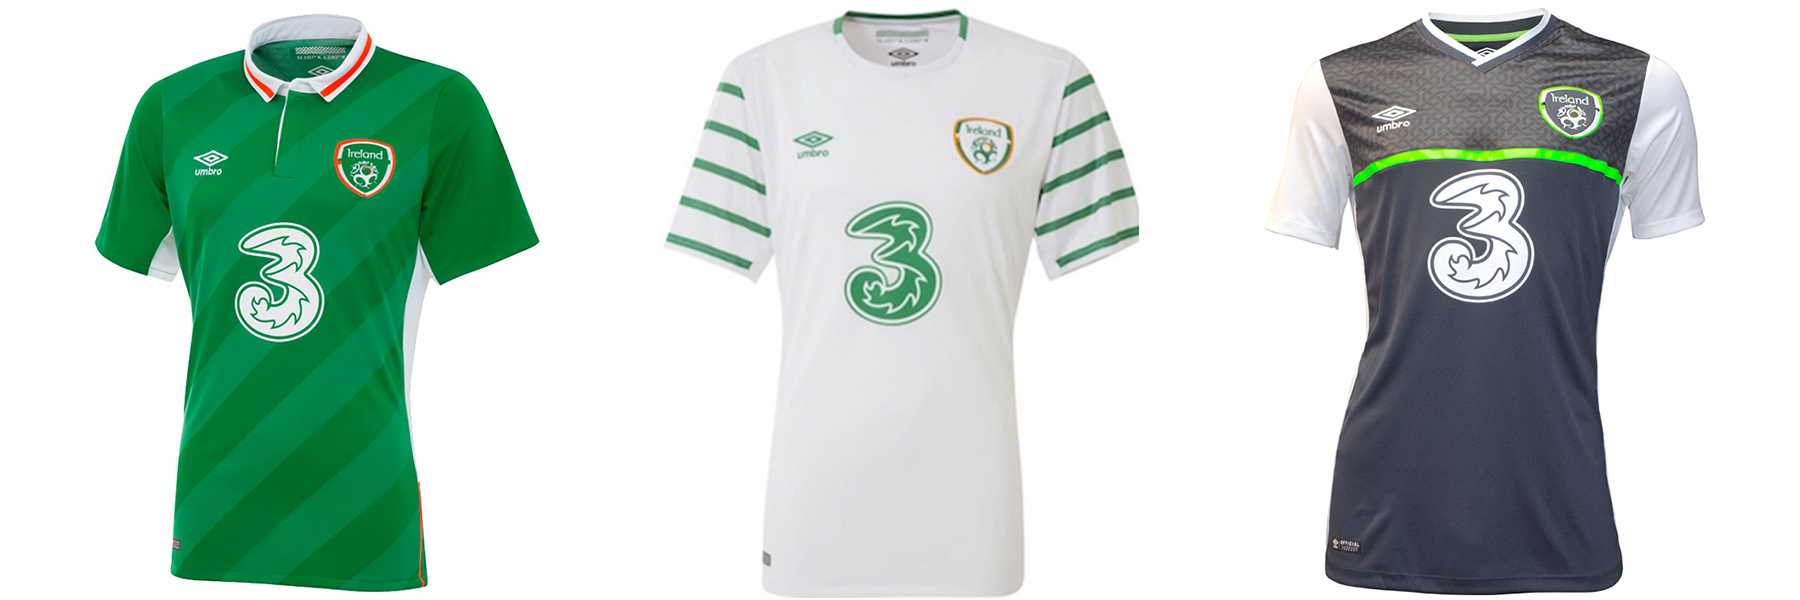 Новая форма сборной Ирландии Евро-2016